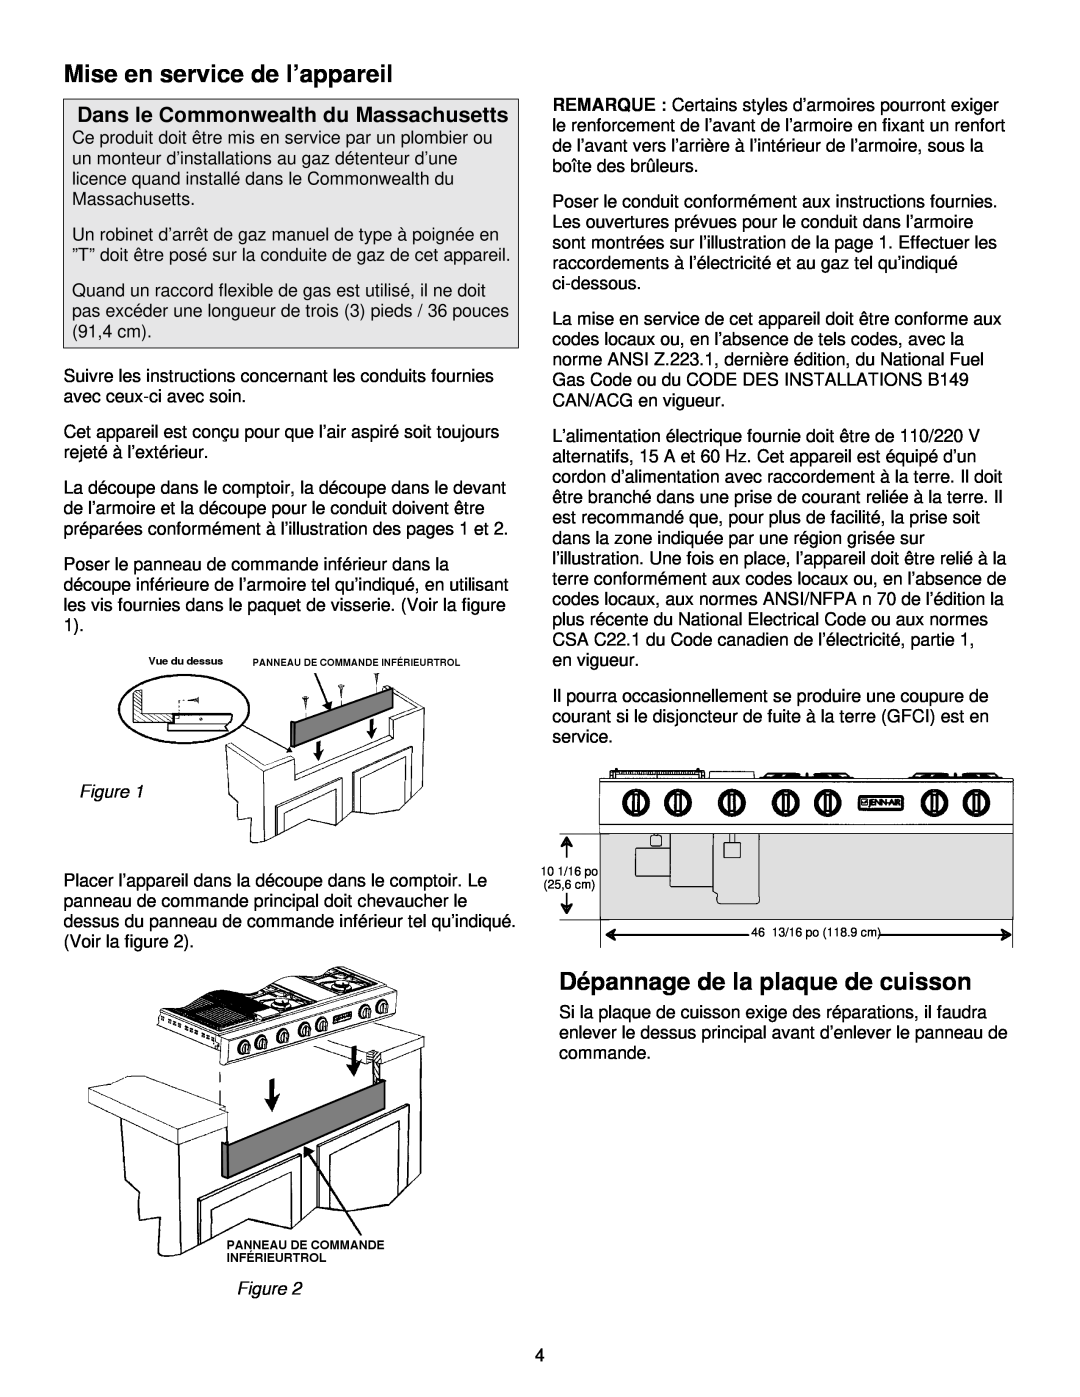 Jenn-Air JGD8348CDP installation instructions Mise en service de l’appareil, Dépannage de la plaque de cuisson 